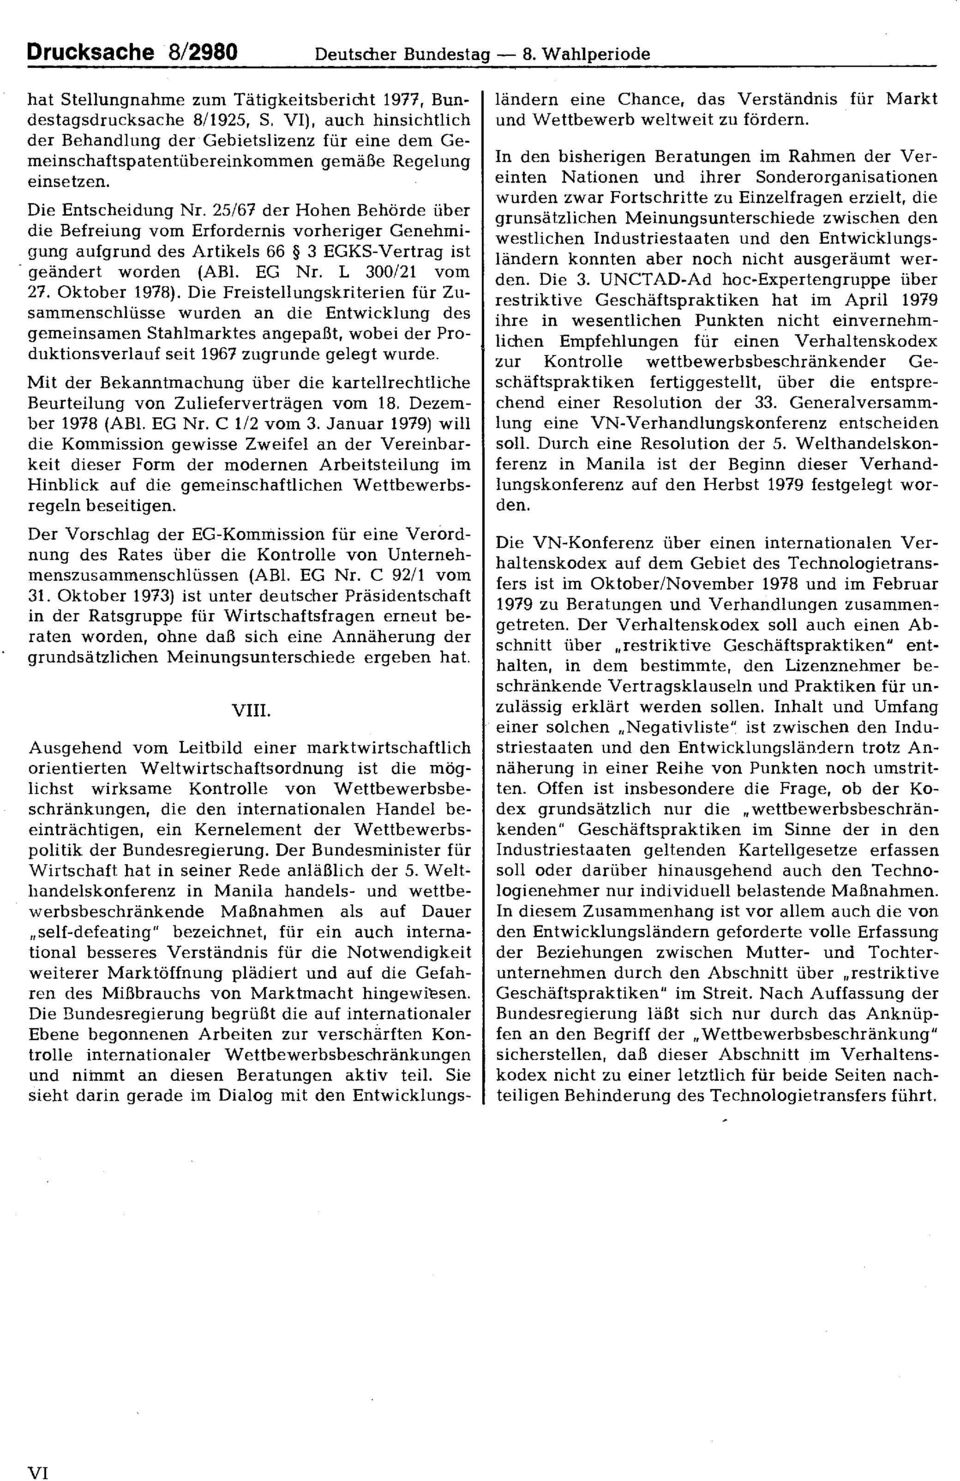 25/67 der Hohen Behörde über die Befreiung vom Erfordernis vorheriger Genehmigung aufgrund des Artikels 66 3 EGKSVertrag ist geändert worden (ABl. EG Nr. L 300/21 vom 27. Oktober 1978).